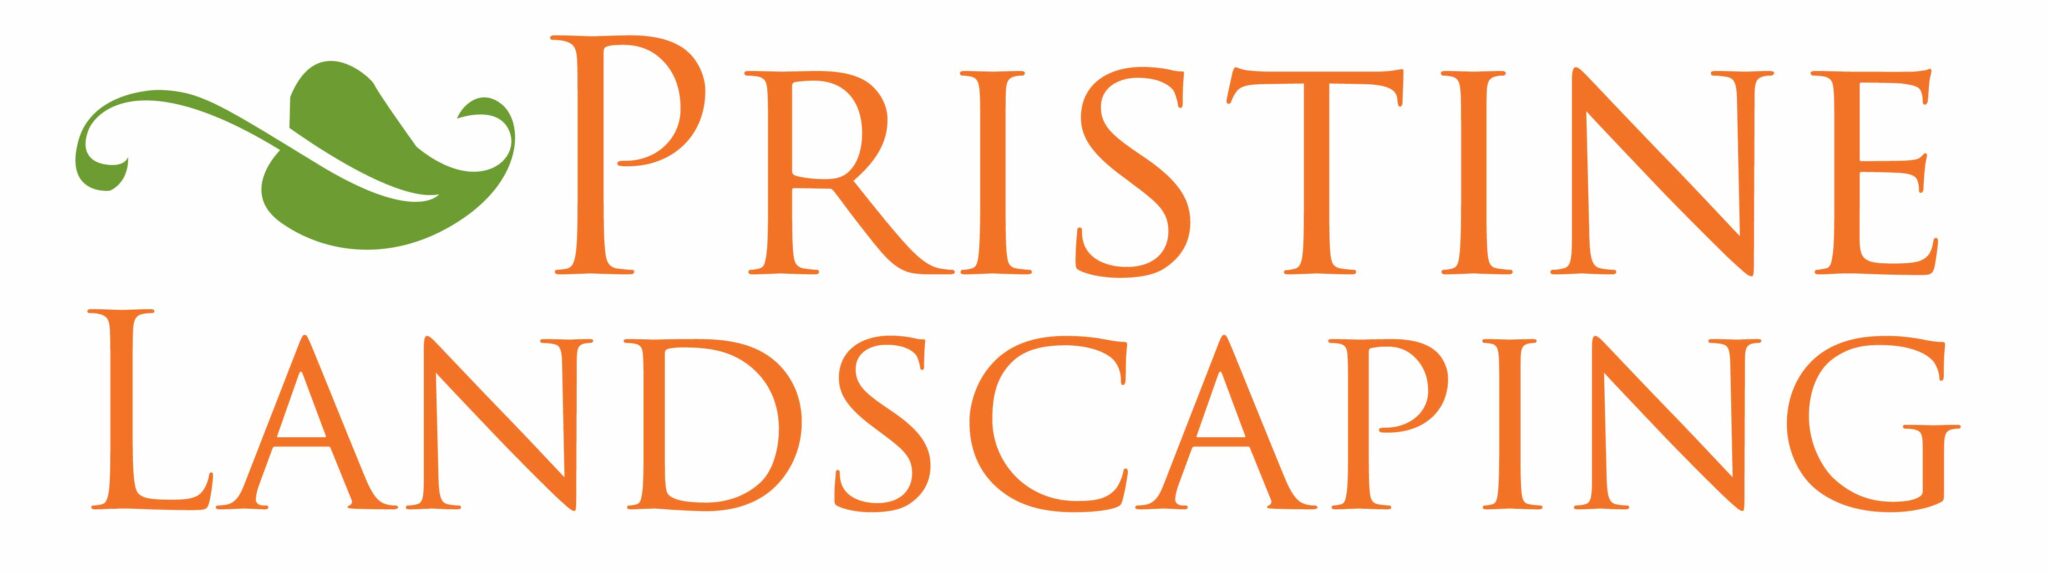 Pristine Landscaping logo